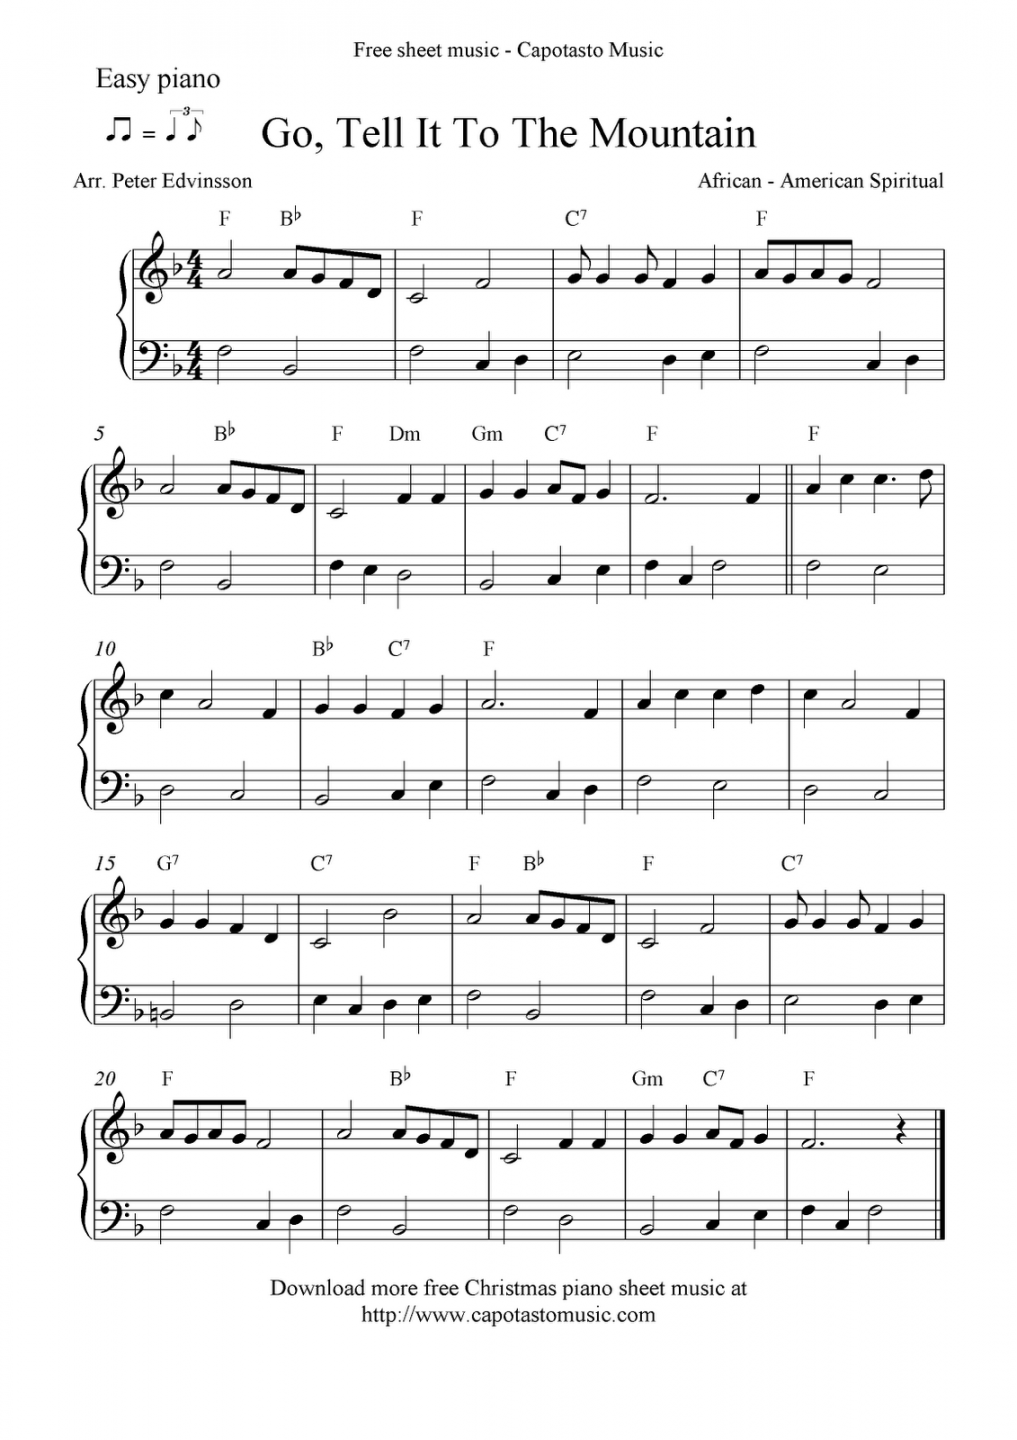 Free Printable Sheet Music For Piano - Printable - Pristojba ukinuti Gosti musicnotes free sheet music Smjernice